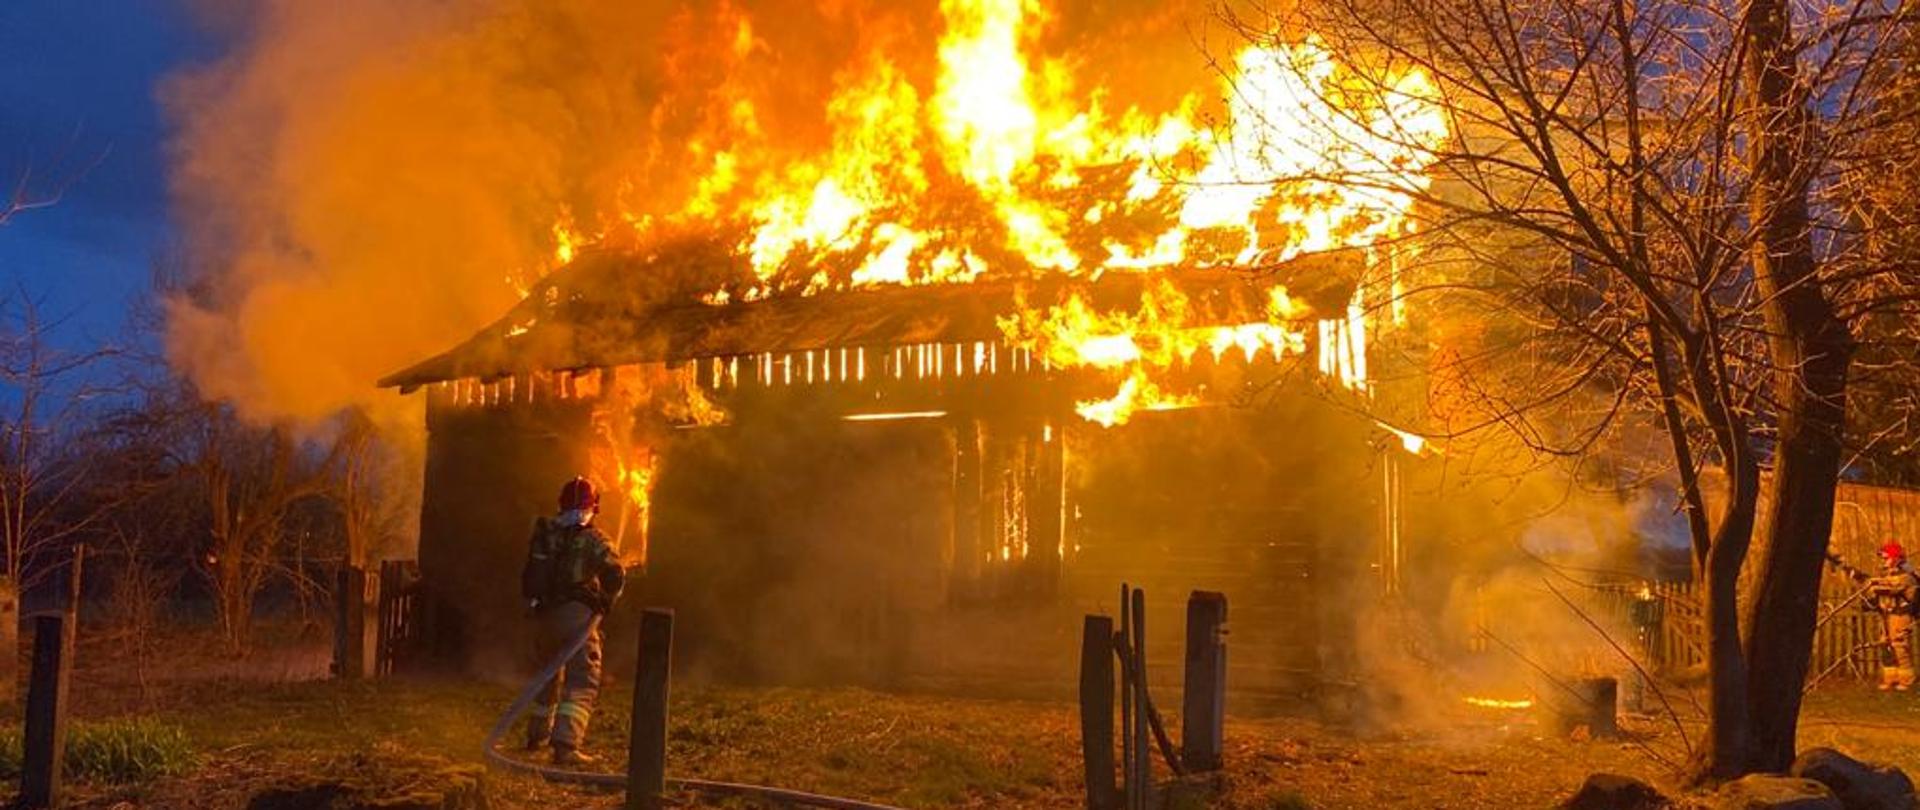 Dwóch strażaków gasi płonący wolnostojący budynek drewniany. Widoczne płomienie. Pora nocna.